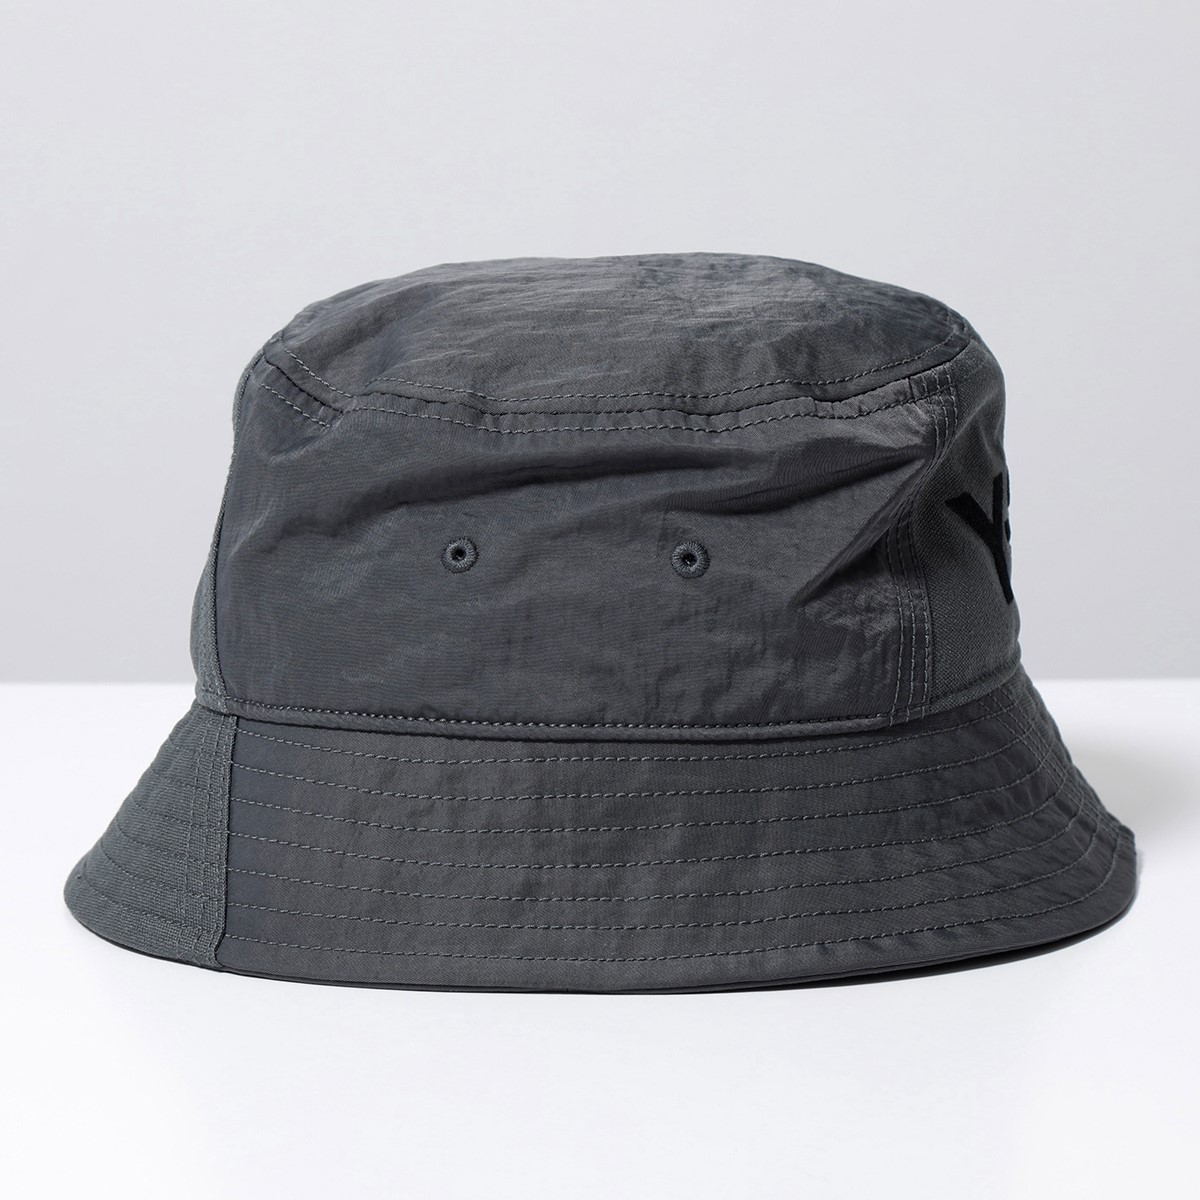 Y-3 ワイスリー バケットハット BUCKET HAT IJ3143 メンズ ナイロン×キャンバス ロゴ刺繍 帽子 DGSOGR/GRDEDG |  インポートセレクト musee